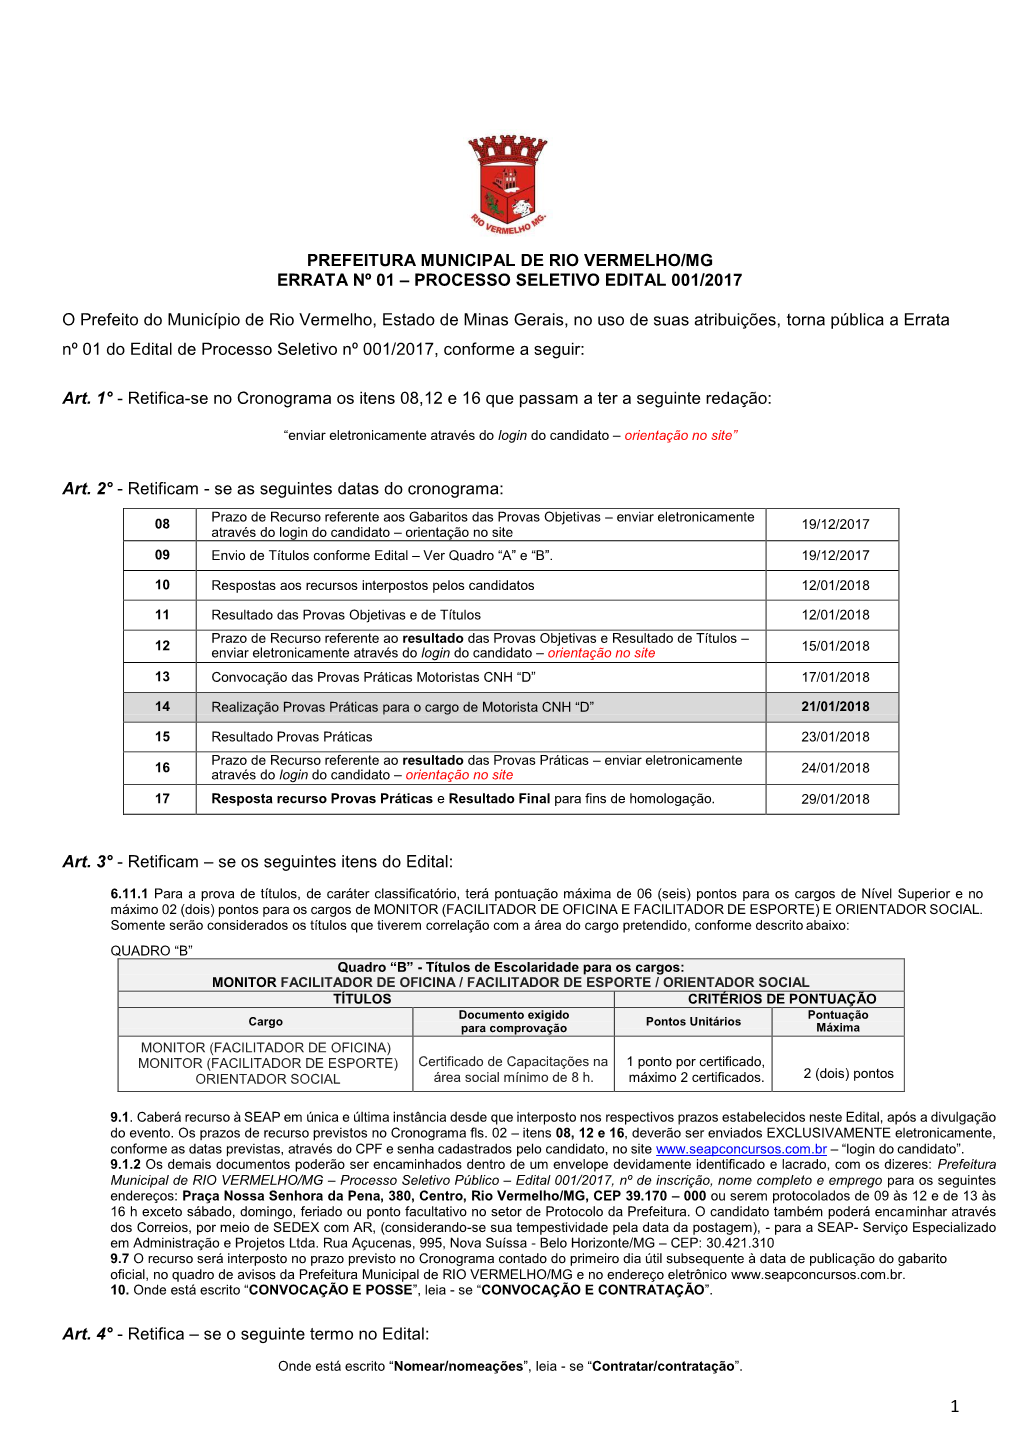 Prefeitura Municipal De Rio Vermelho/Mg Errata Nº 01 – Processo Seletivo Edital 001/2017